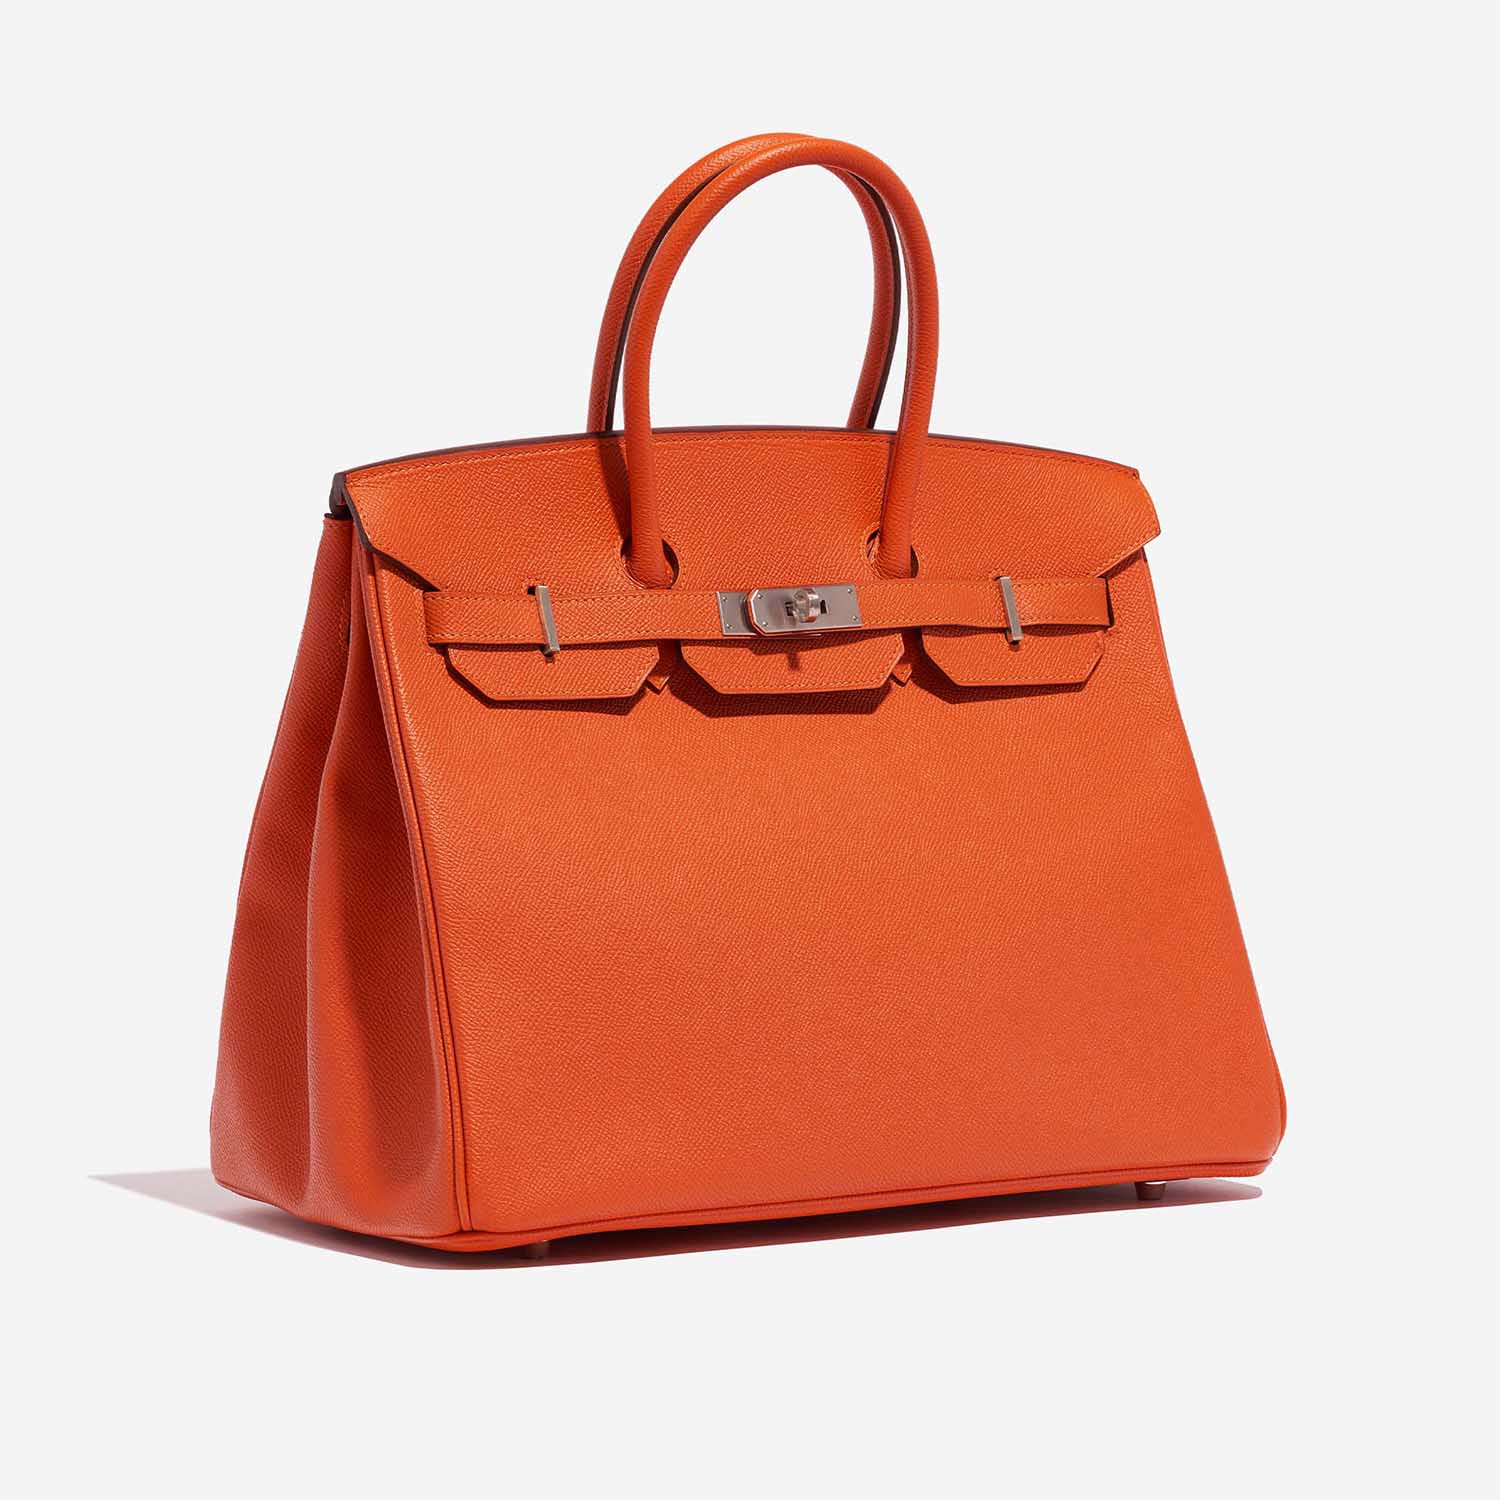 Hermès Birkin 35 Feu Side Front | Verkaufen Sie Ihre Designer-Tasche auf Saclab.com